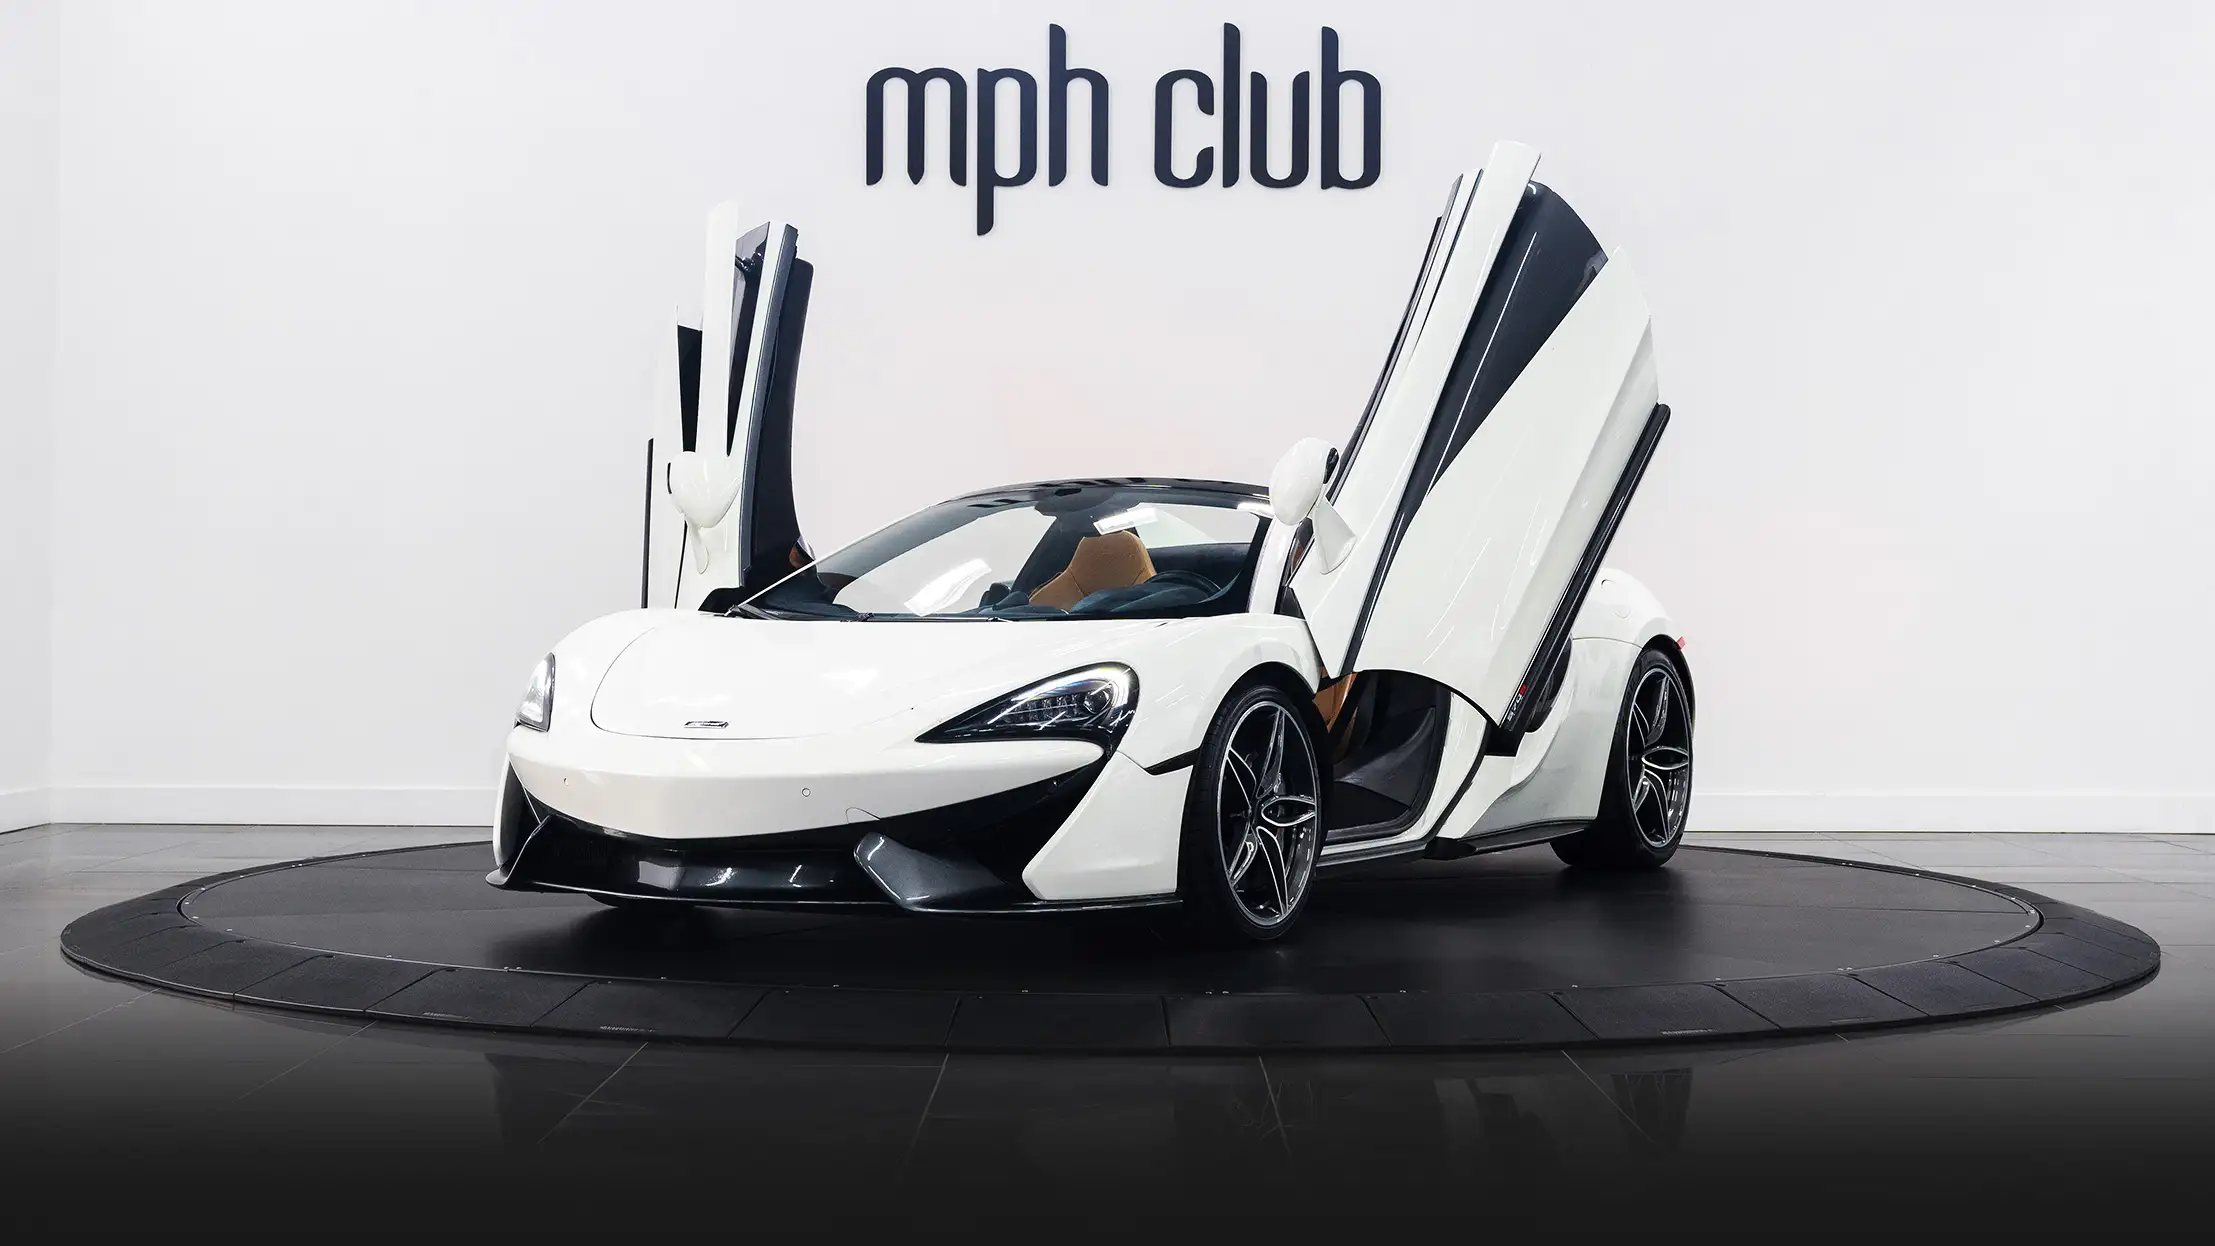 McLaren 570s Spider rental Miami profile view mph club